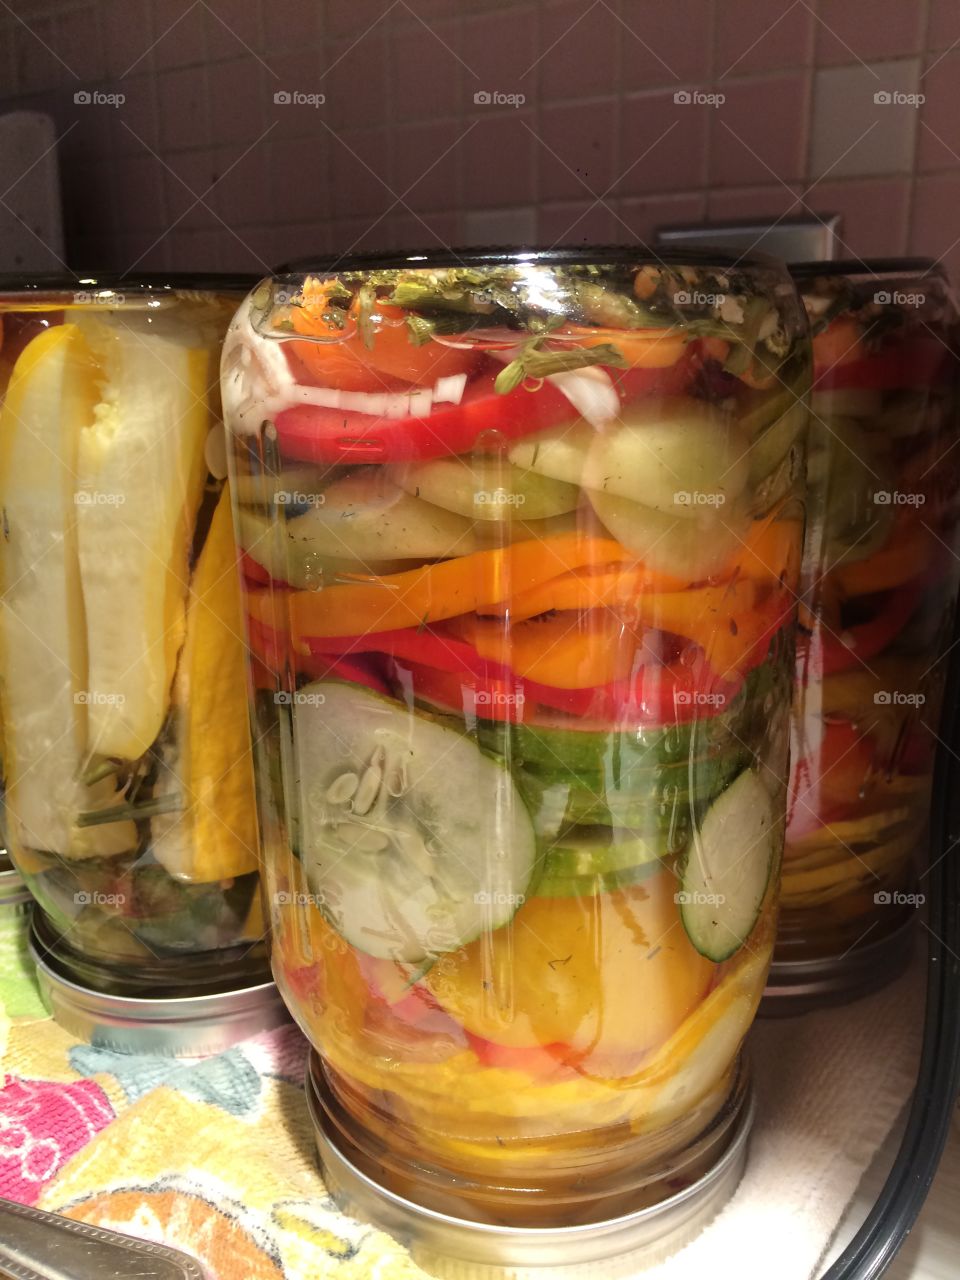 Vegetables in a jar